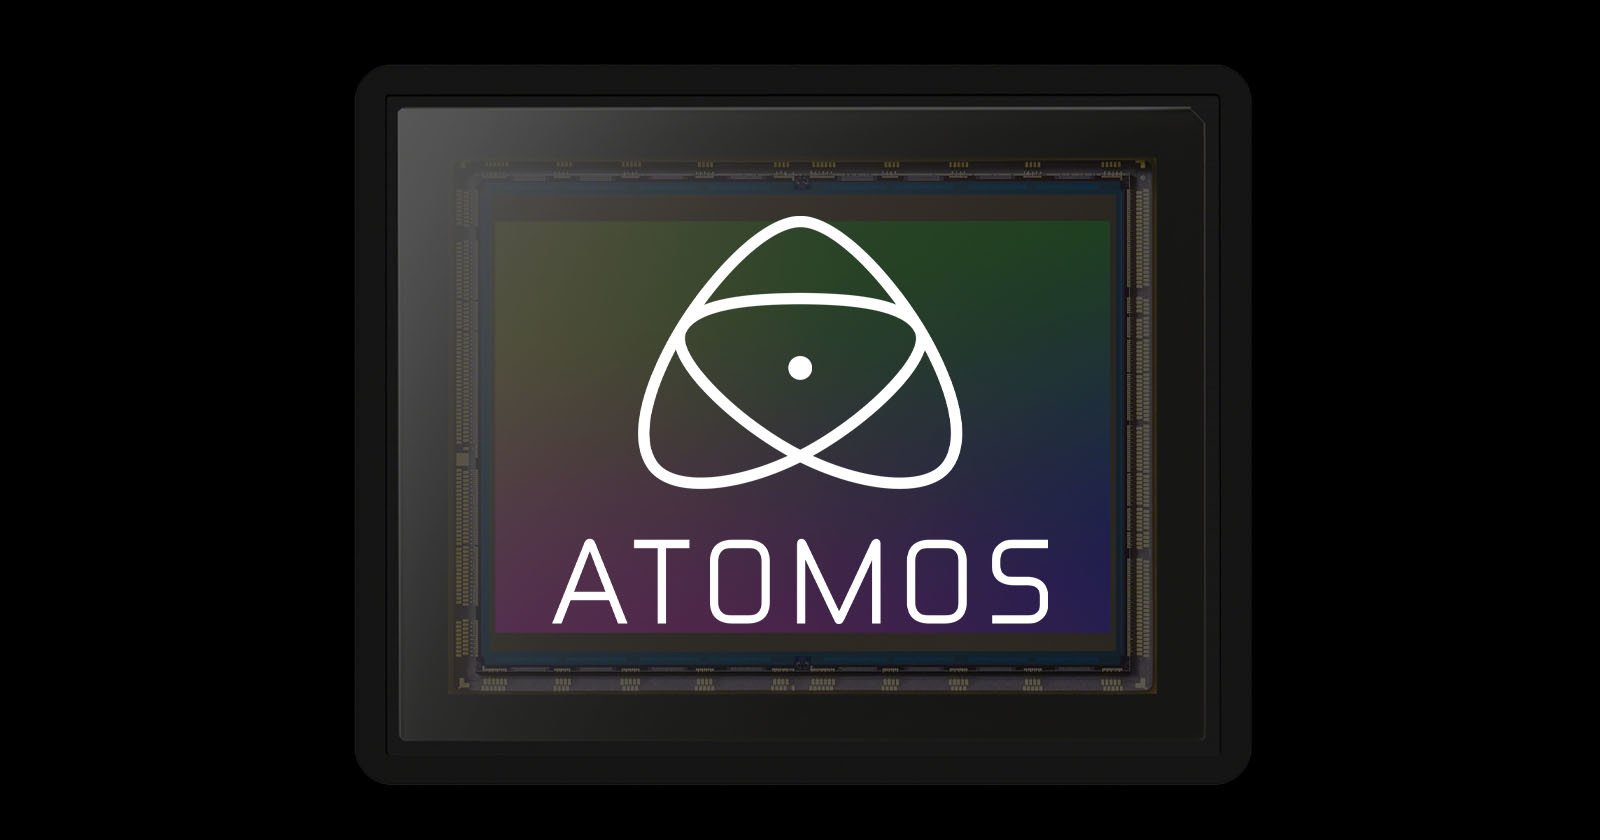  atomos has developed camera sensor 